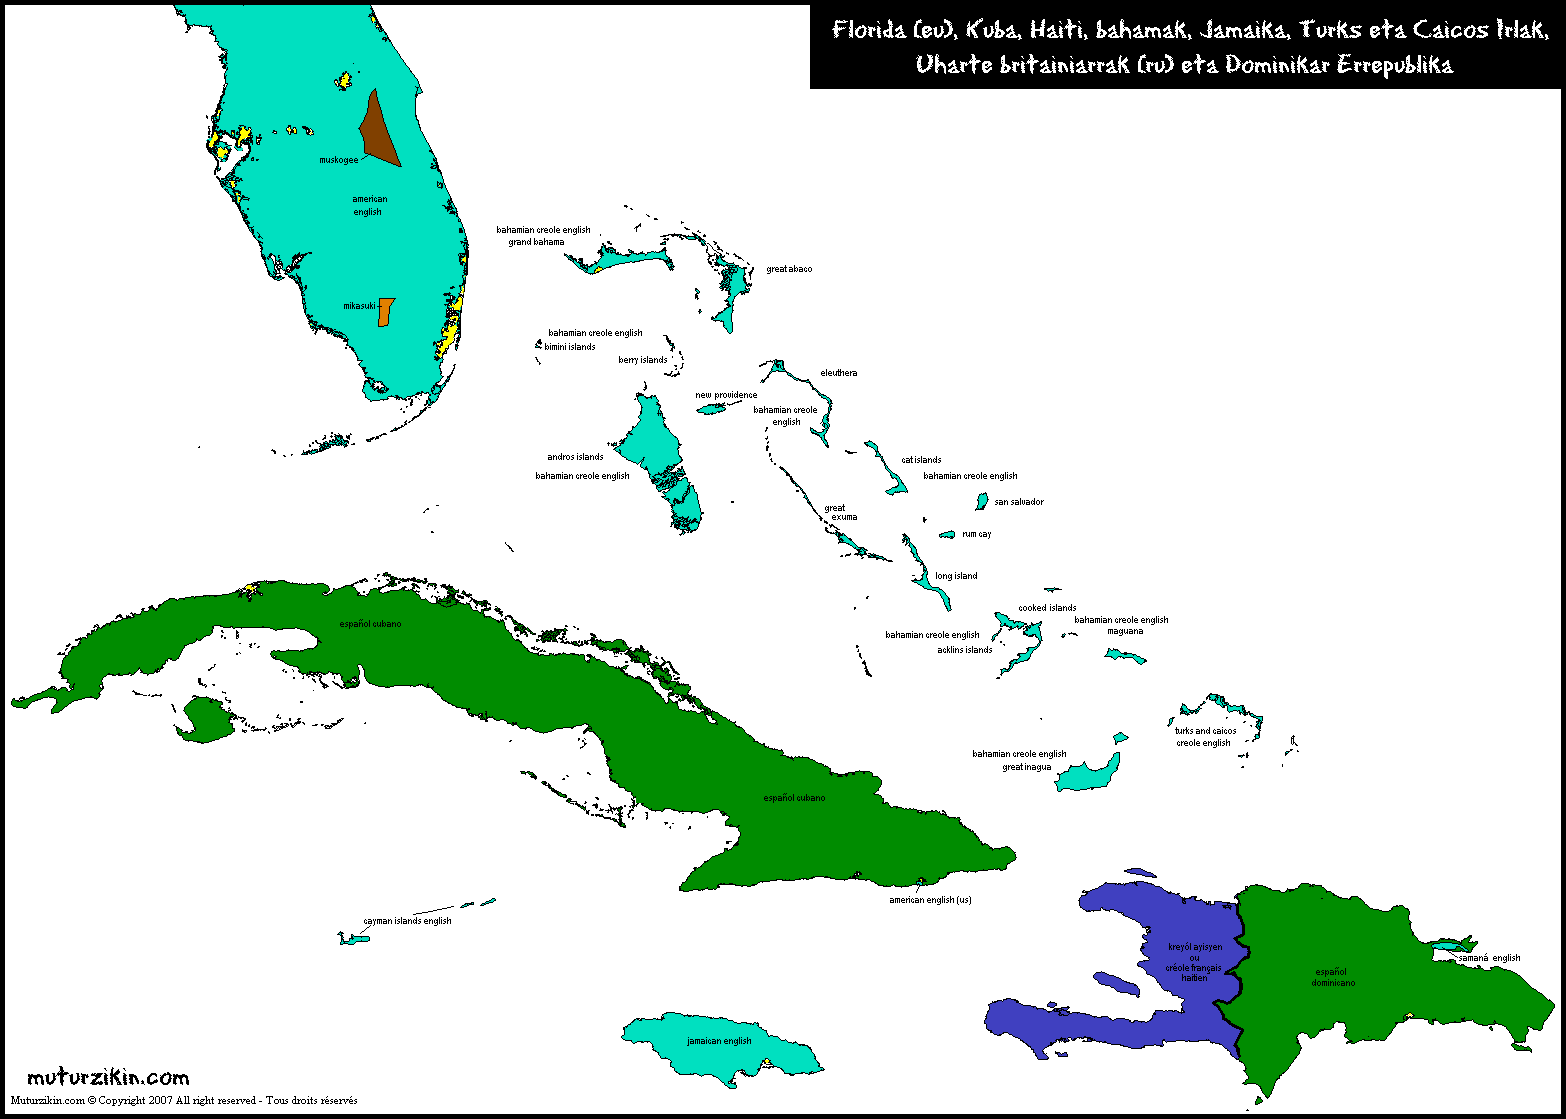 kajmanski otoci karta Cuba & Antillas   Mapa lingüístico / Linguistic map kajmanski otoci karta